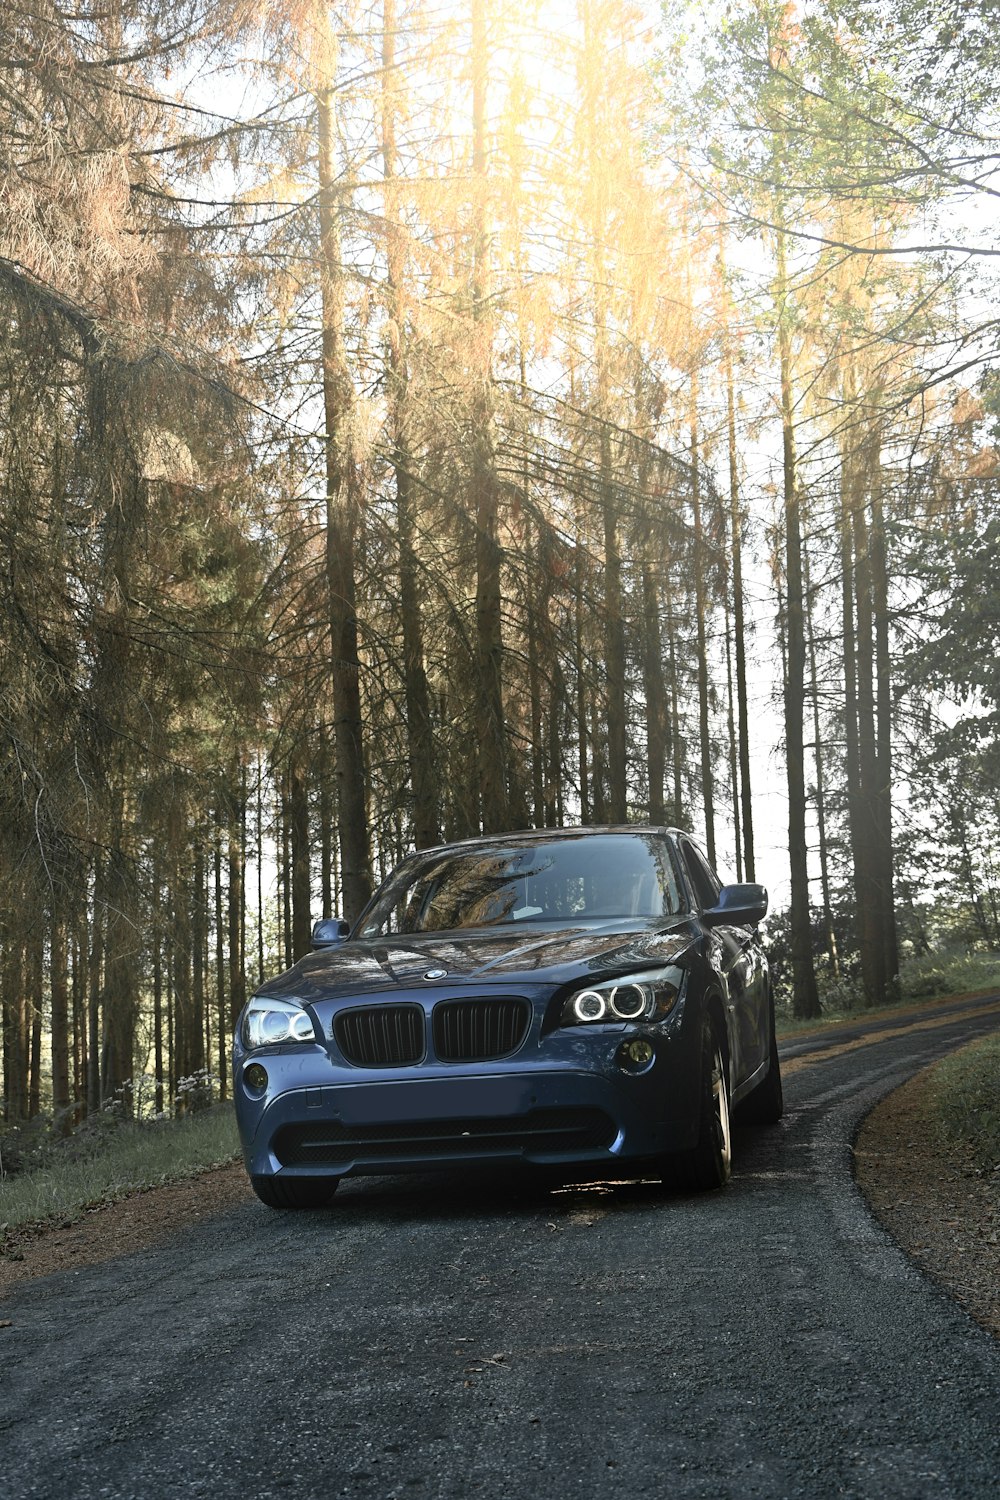 BMW M 3 blu sulla strada tra gli alberi durante il giorno